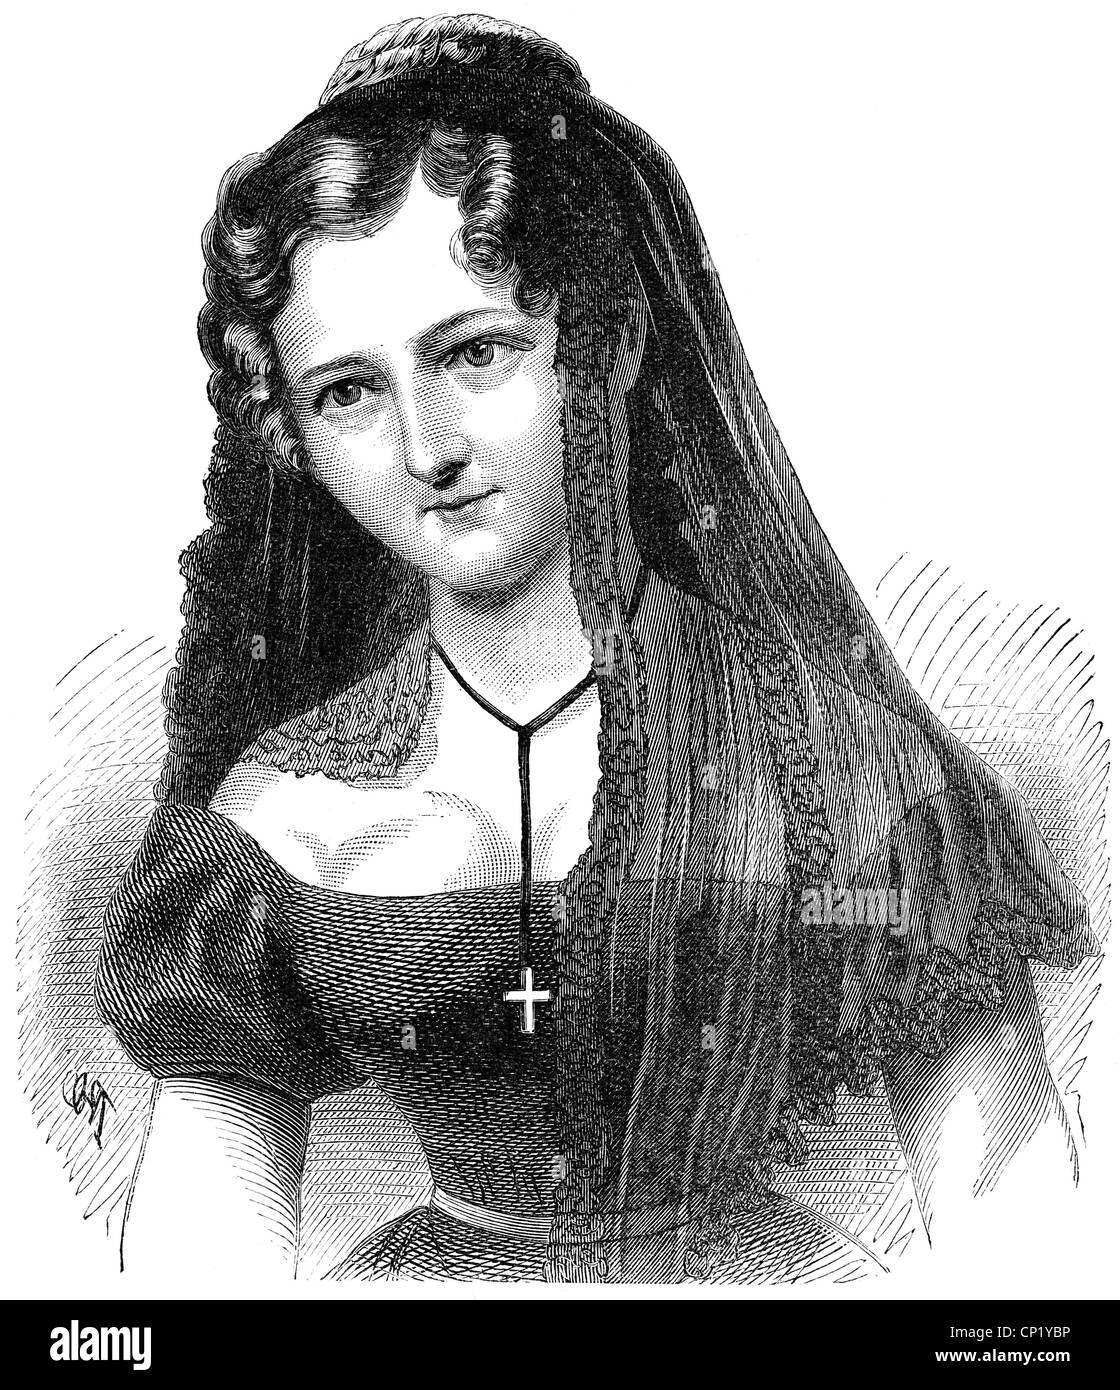 Bauer, Caroline, 29.3.1807 - 18.10.1878, attrice tedesca, 27 anni, ritratto, incisione in legno, 19th secolo, Foto Stock